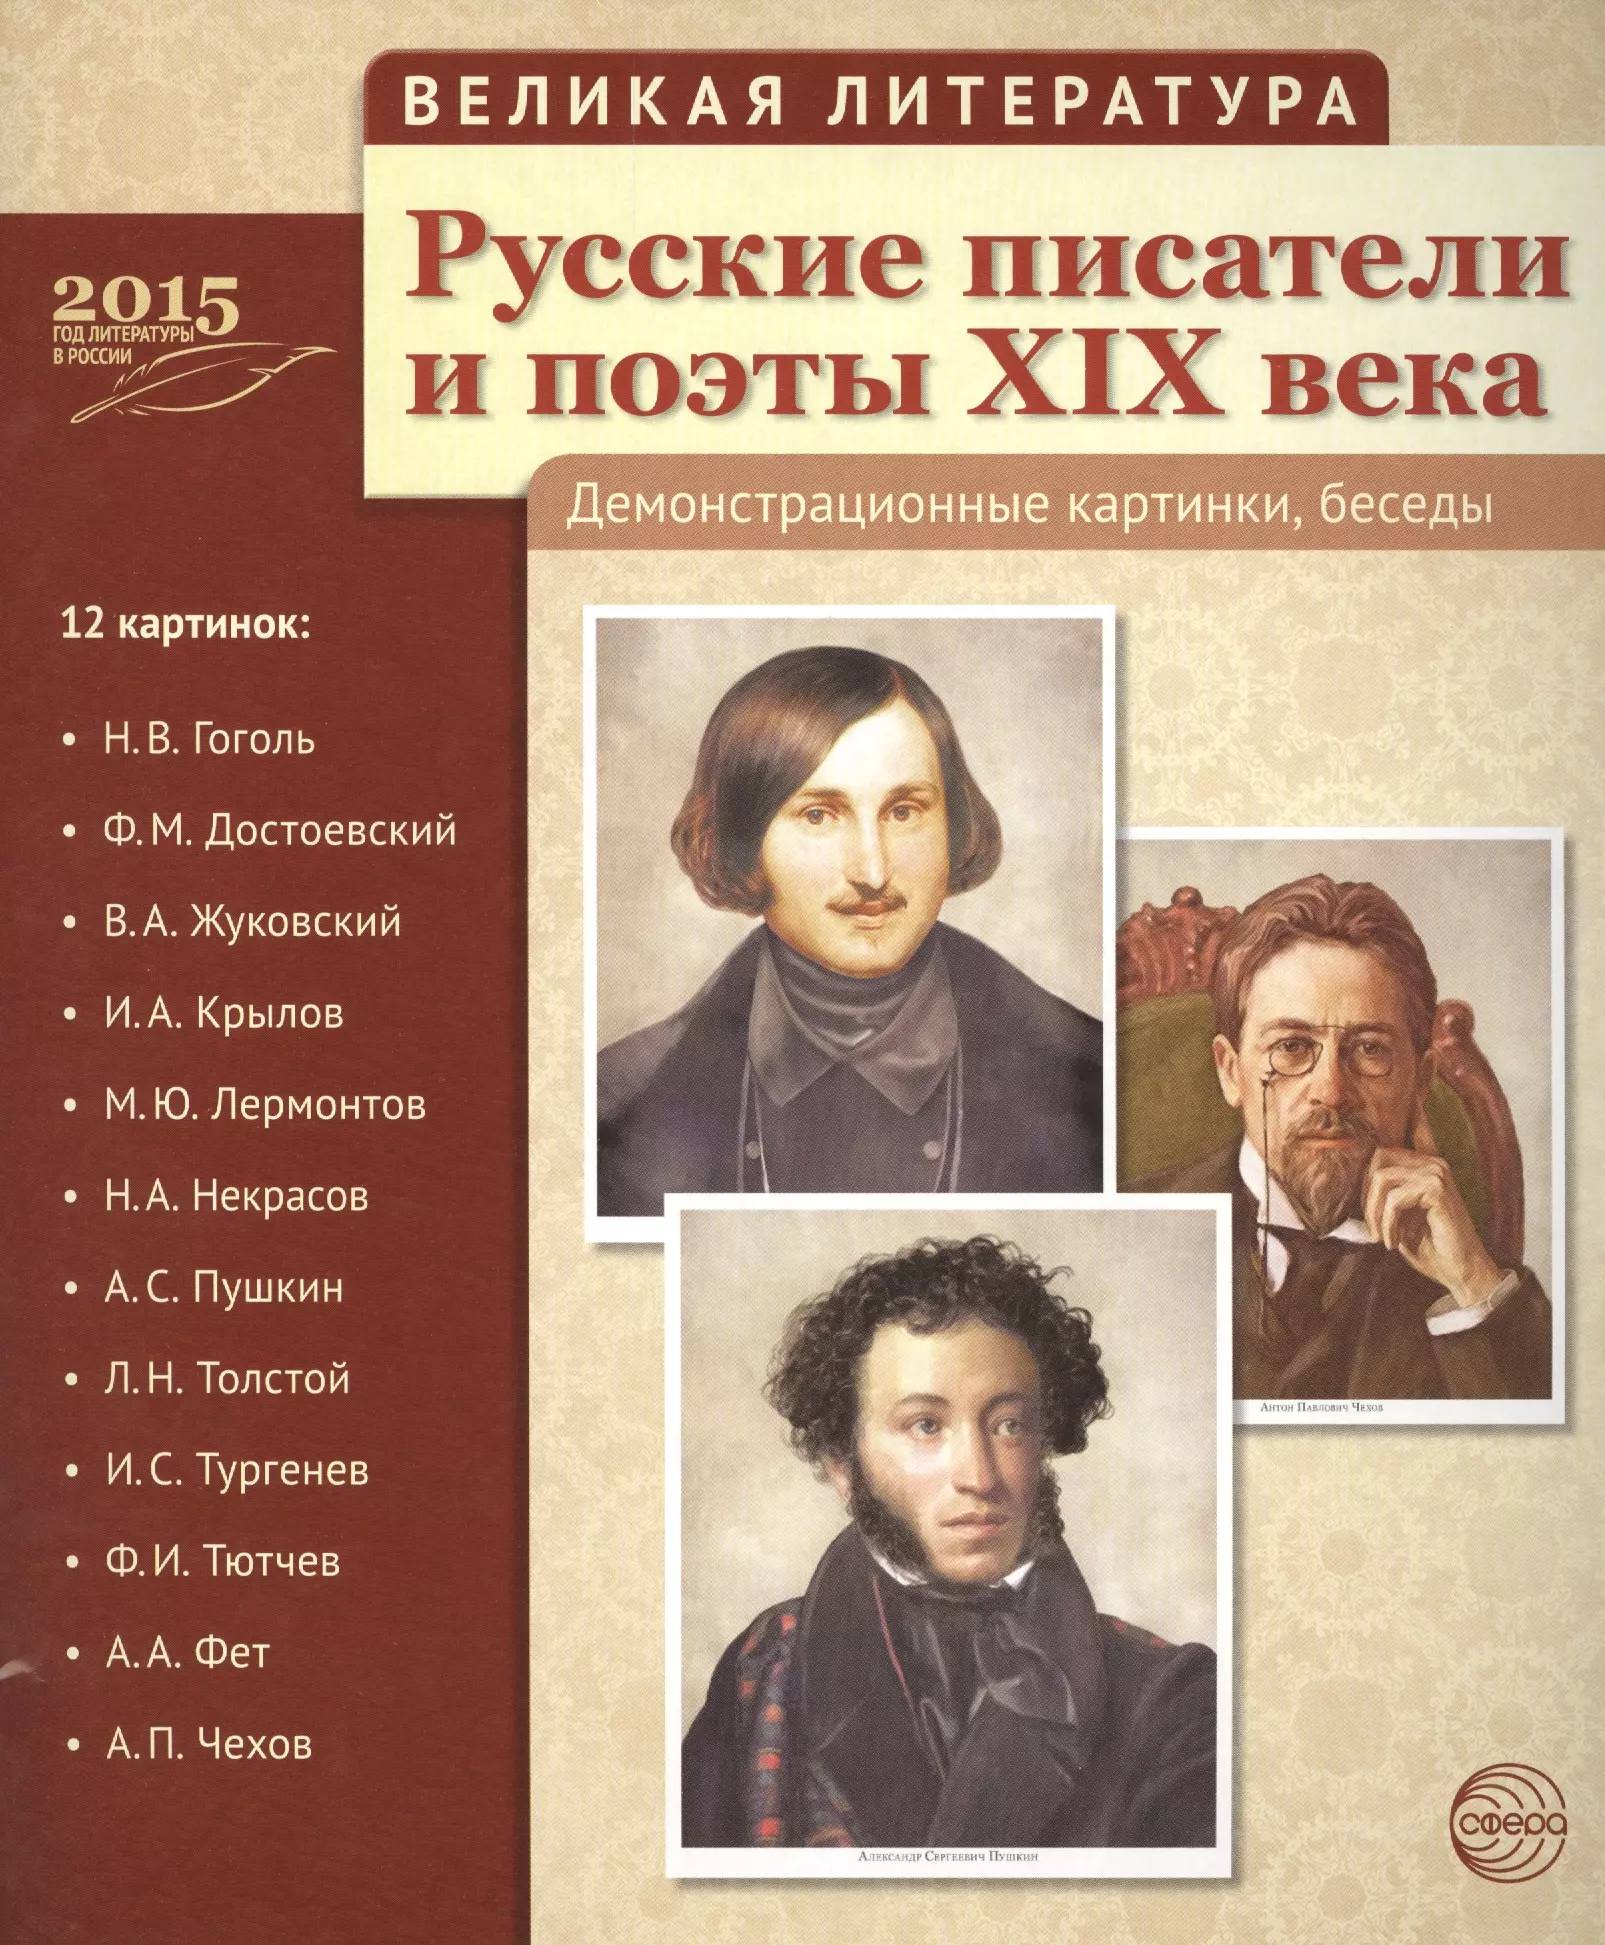 Писатели русские фото с именами и фамилиями